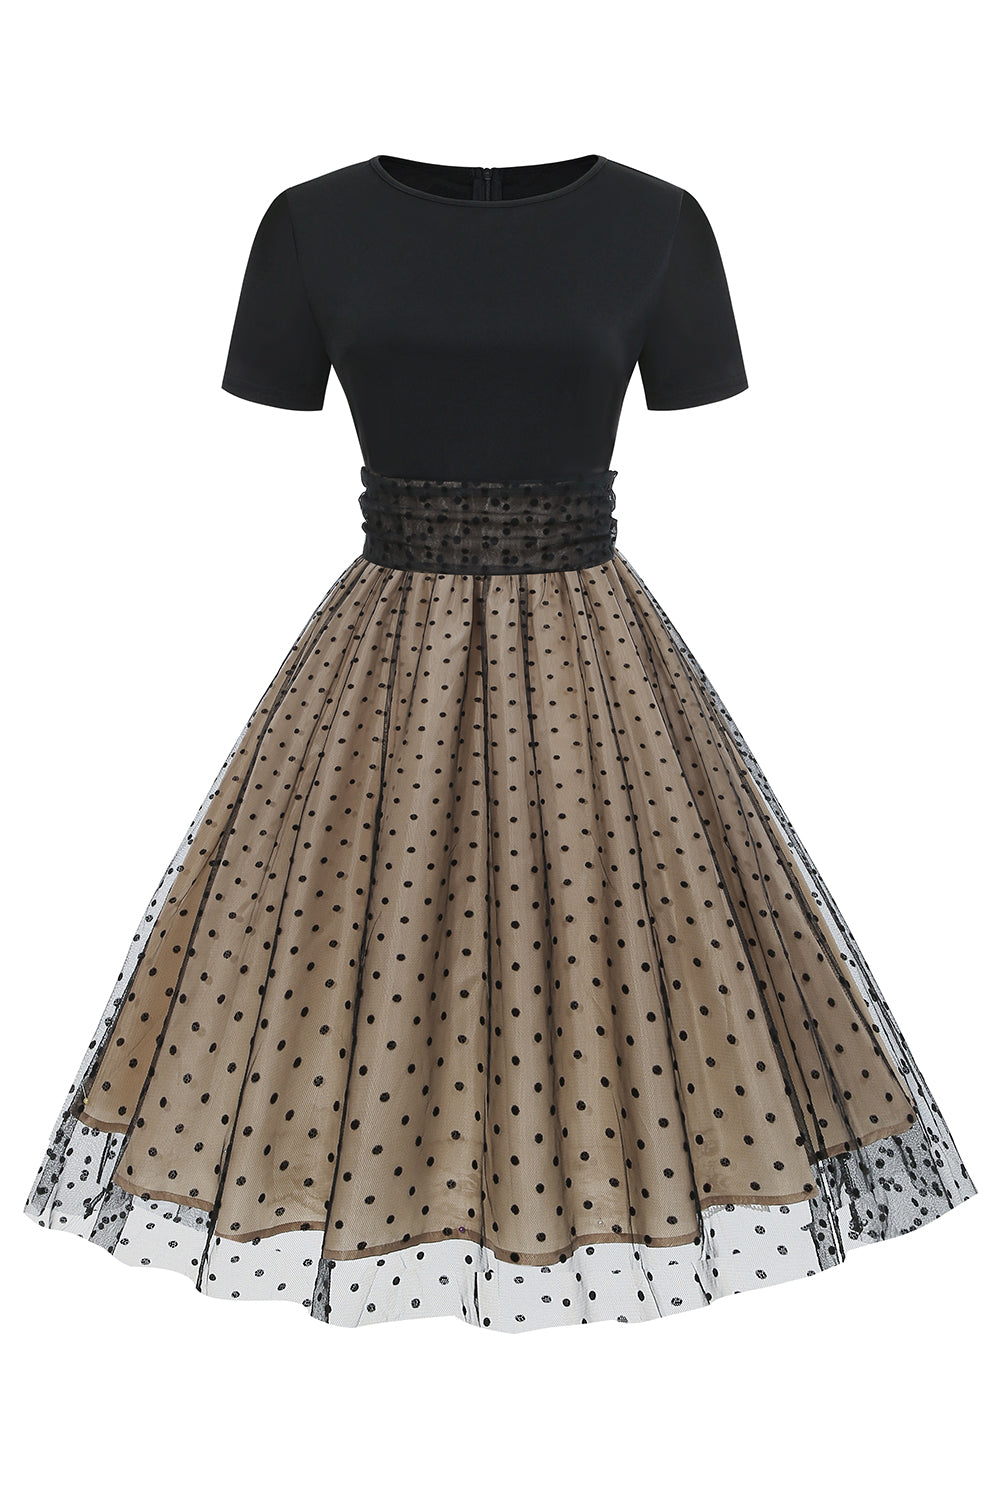 Vestido preto polka dots vintage 1950